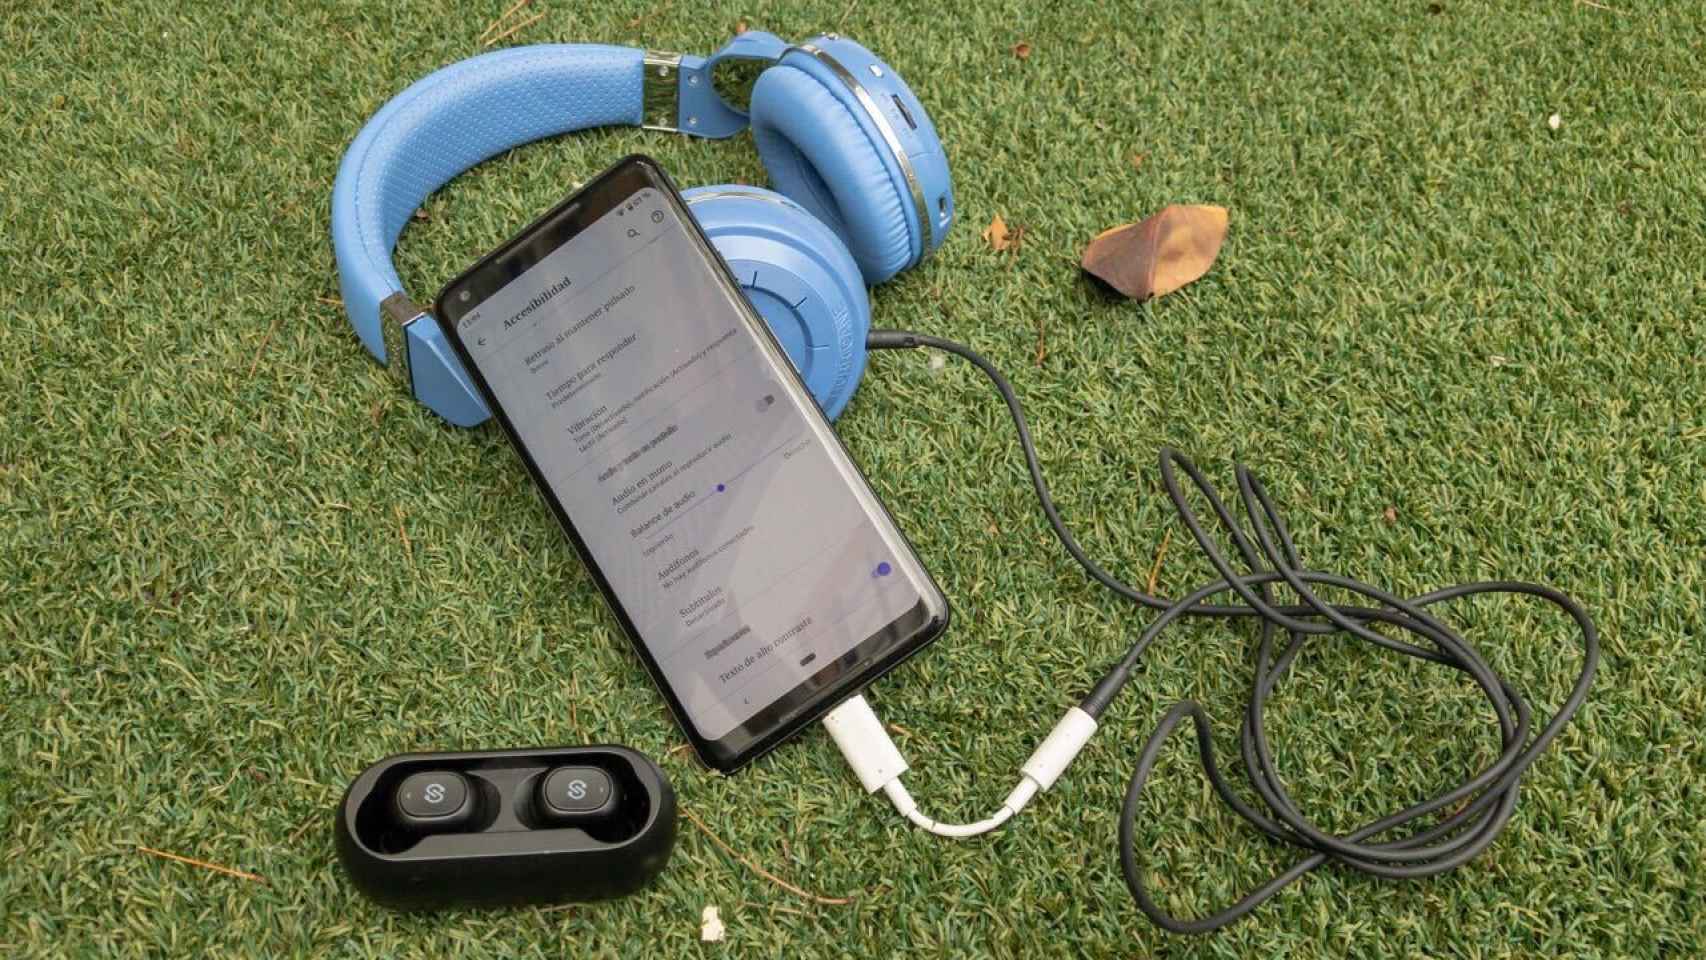 Vinagre Paloma Meloso Cómo mejorar el sonido en Android: trucos y aplicaciones